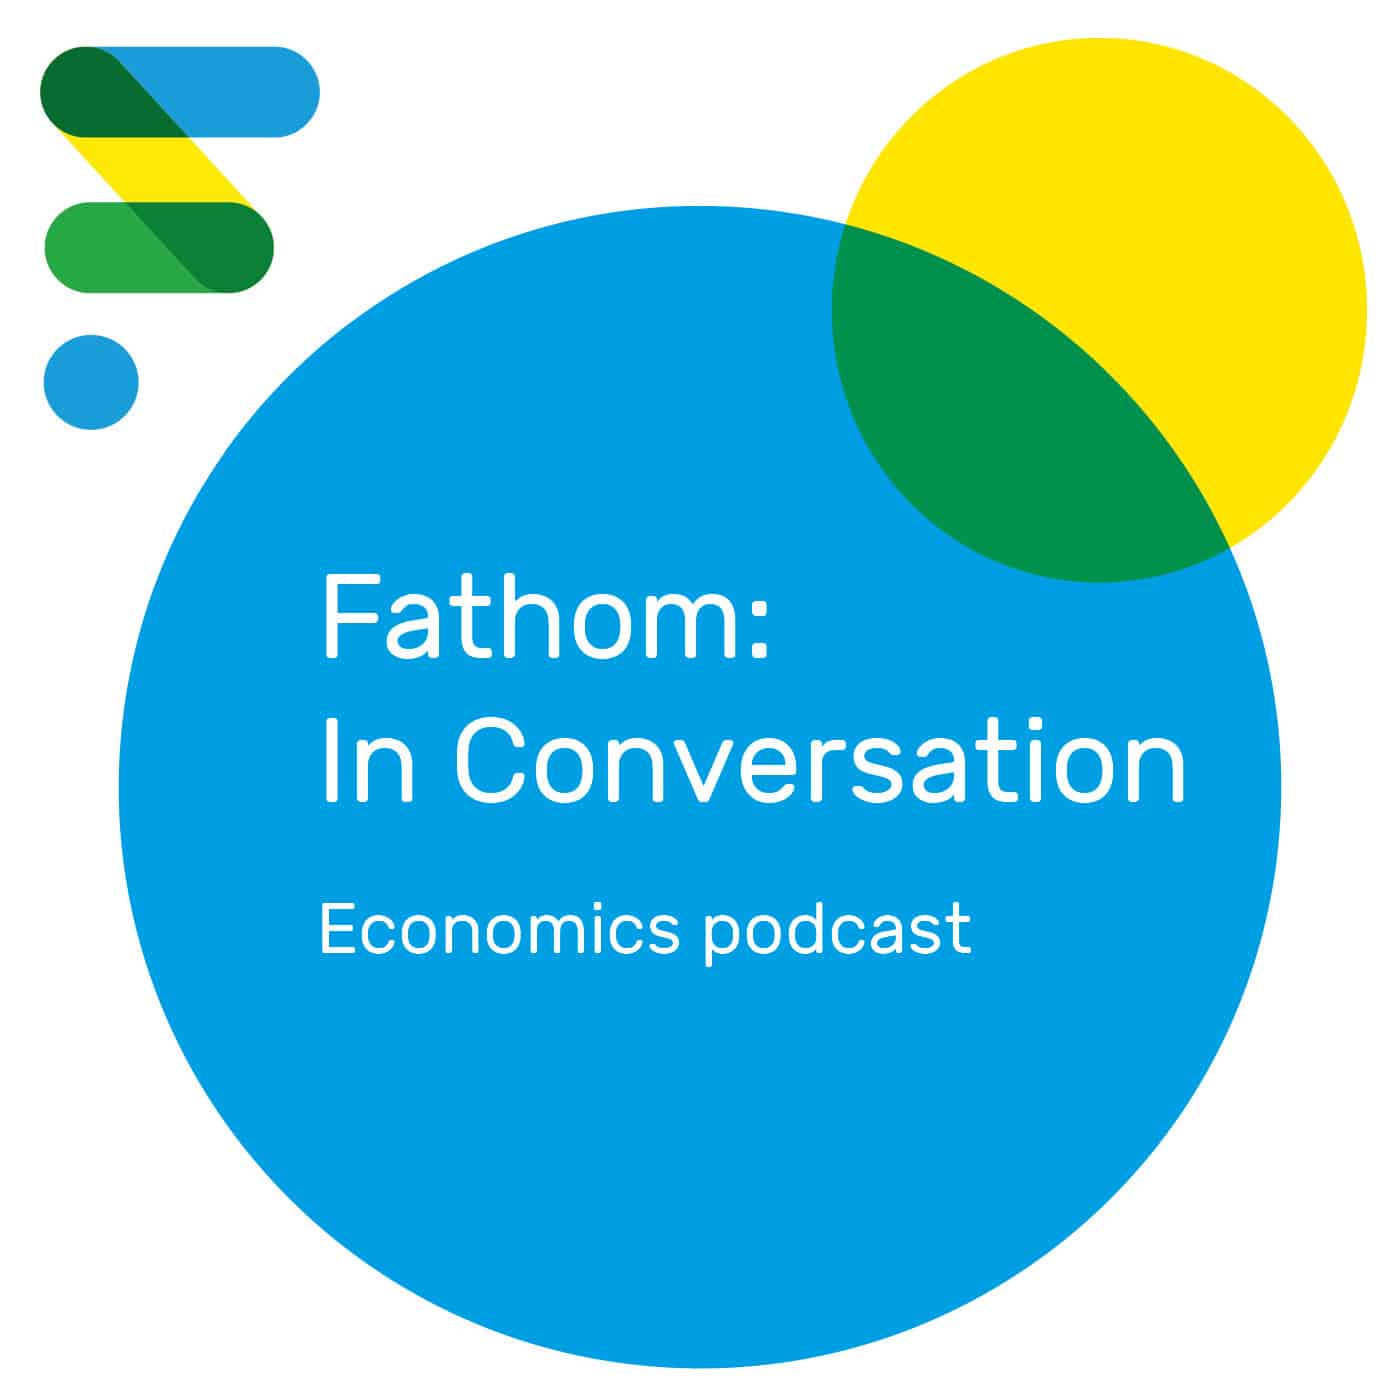 Fathom: In Conversation